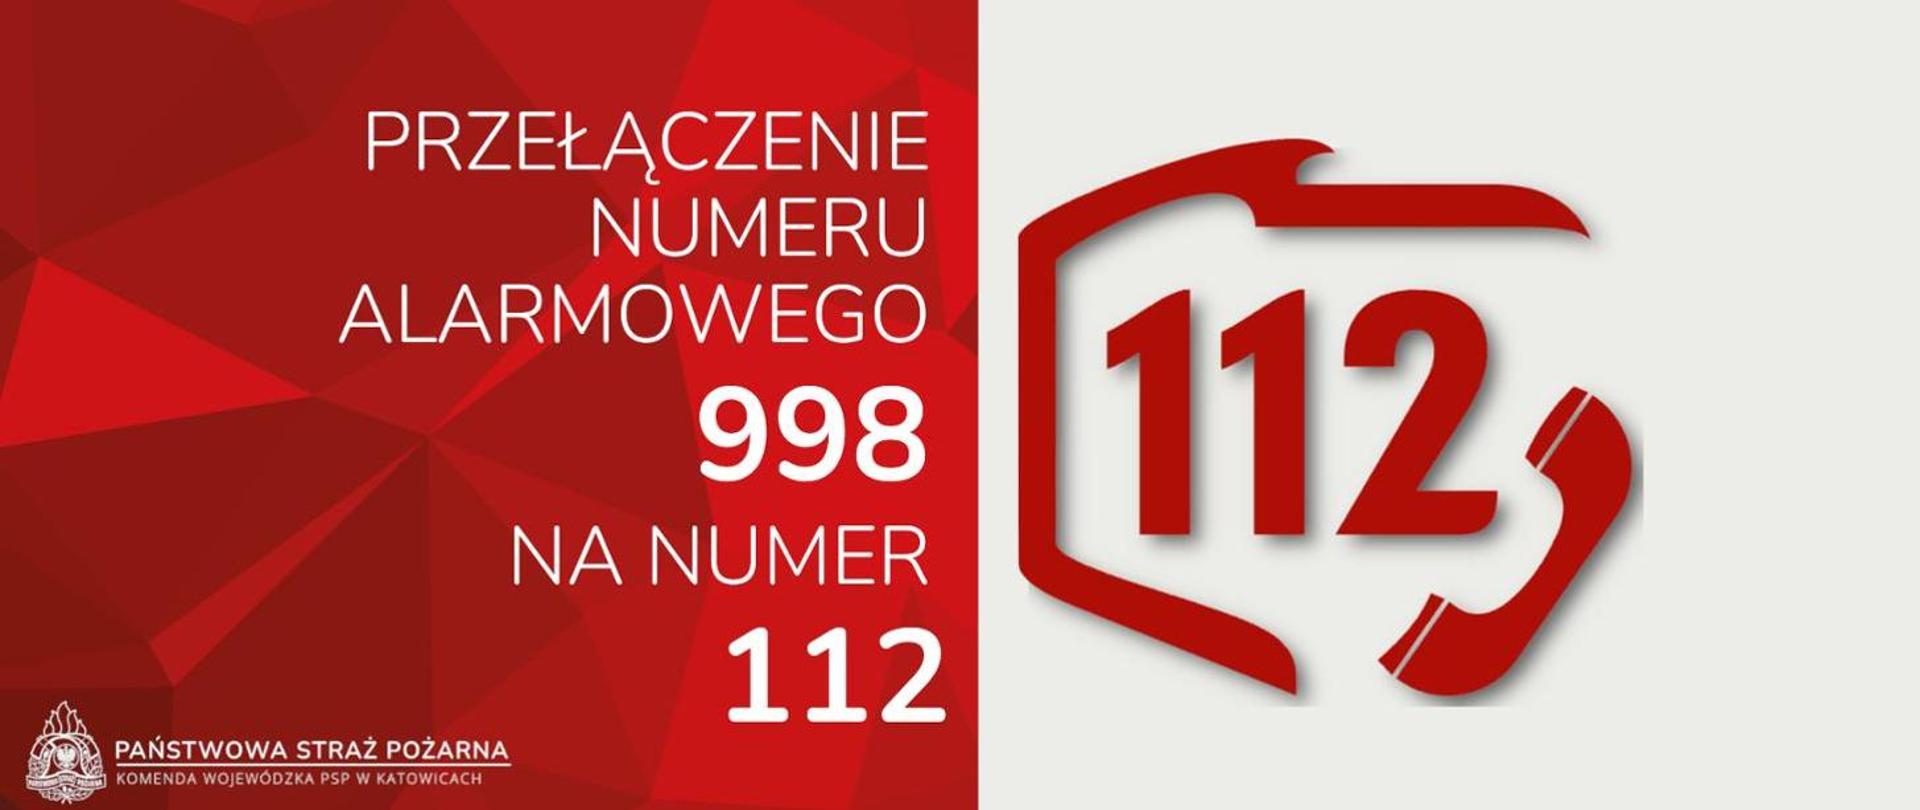 Po lewej stronie na czerwonym tle napis Przełączenie numeru alarmowego 998 na numer 112, logo oraz podpis Państwowa Straż Pożarna Komenda Wojewódzka PSP w Katowicach, po prawej stronie na białym tle numer 112